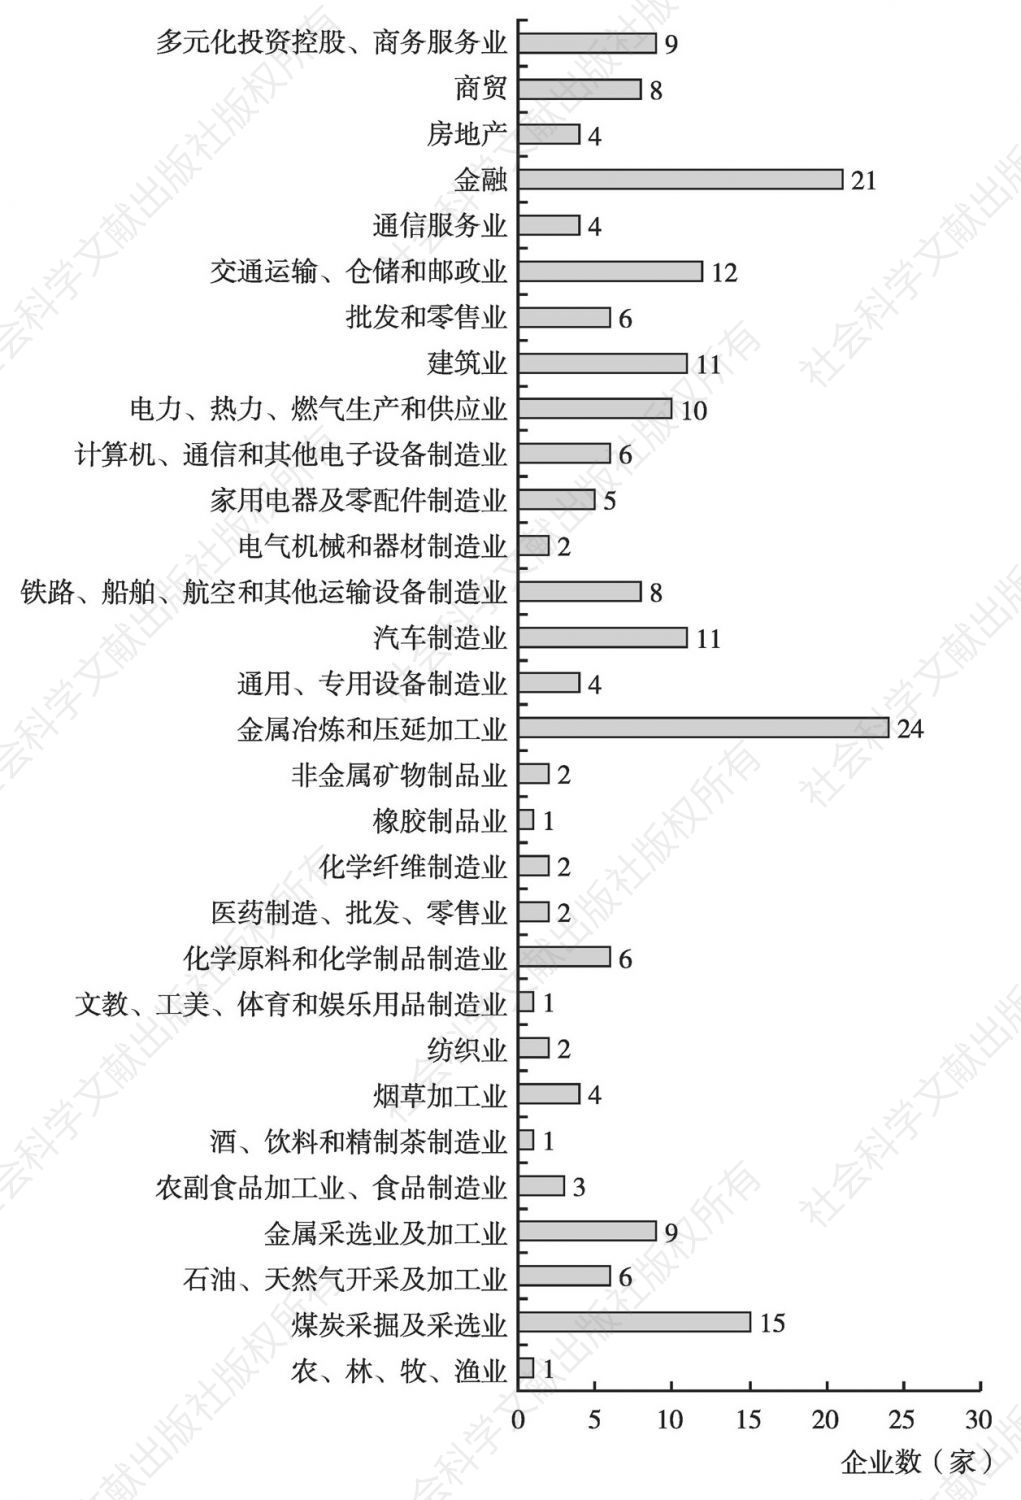 图5 2015年中国企业200强行业分布情况